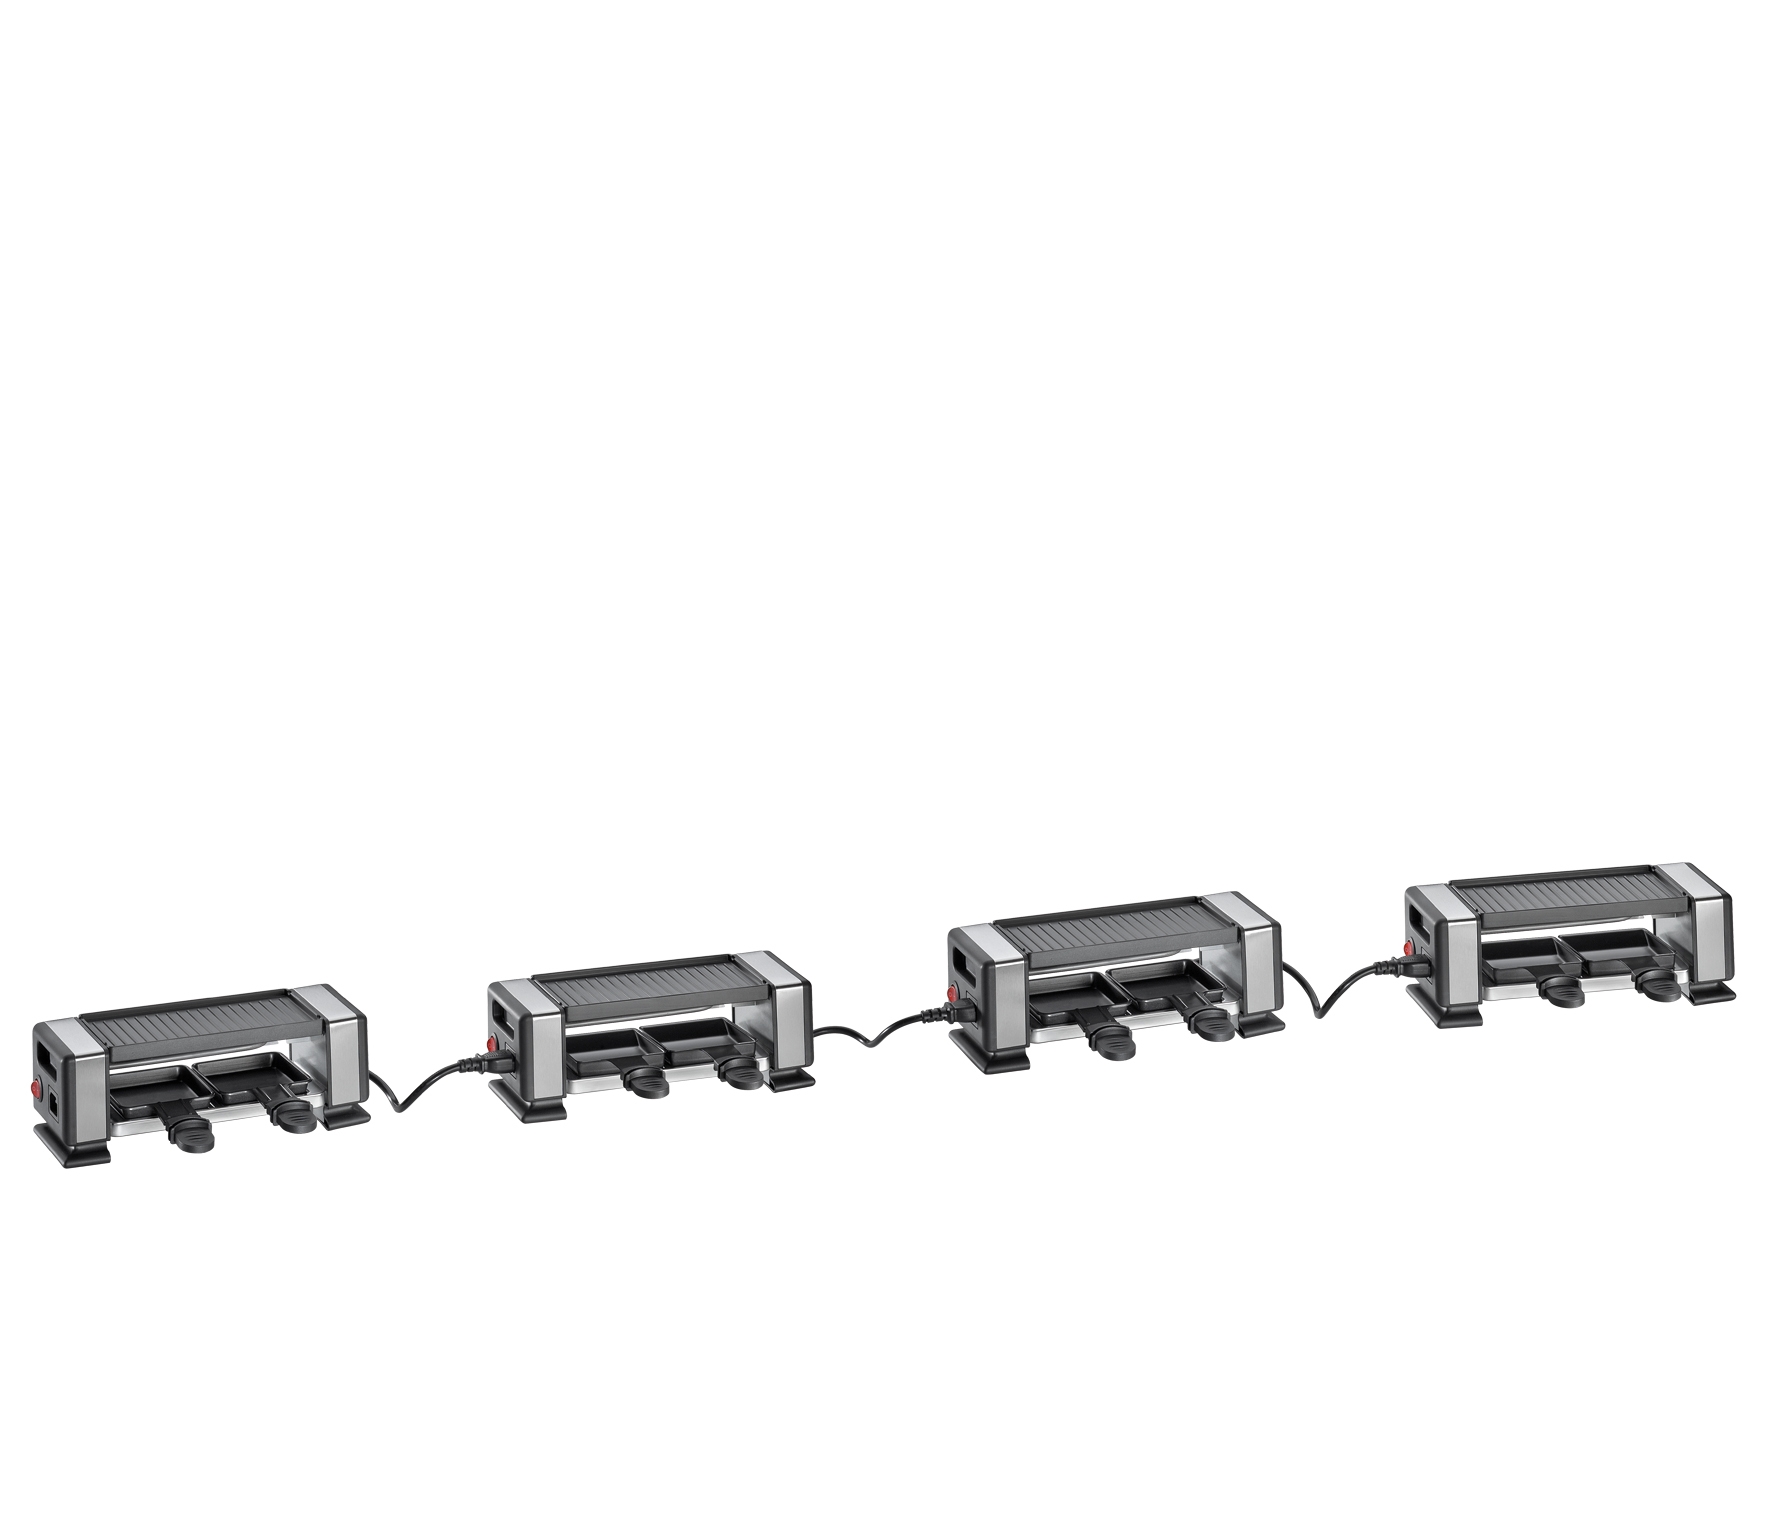 Raclette VISTA2 PLUS  flexibel erweiterbar  + für bis zu 8 Genießer erweiterbar mit bis zu drei Geräten